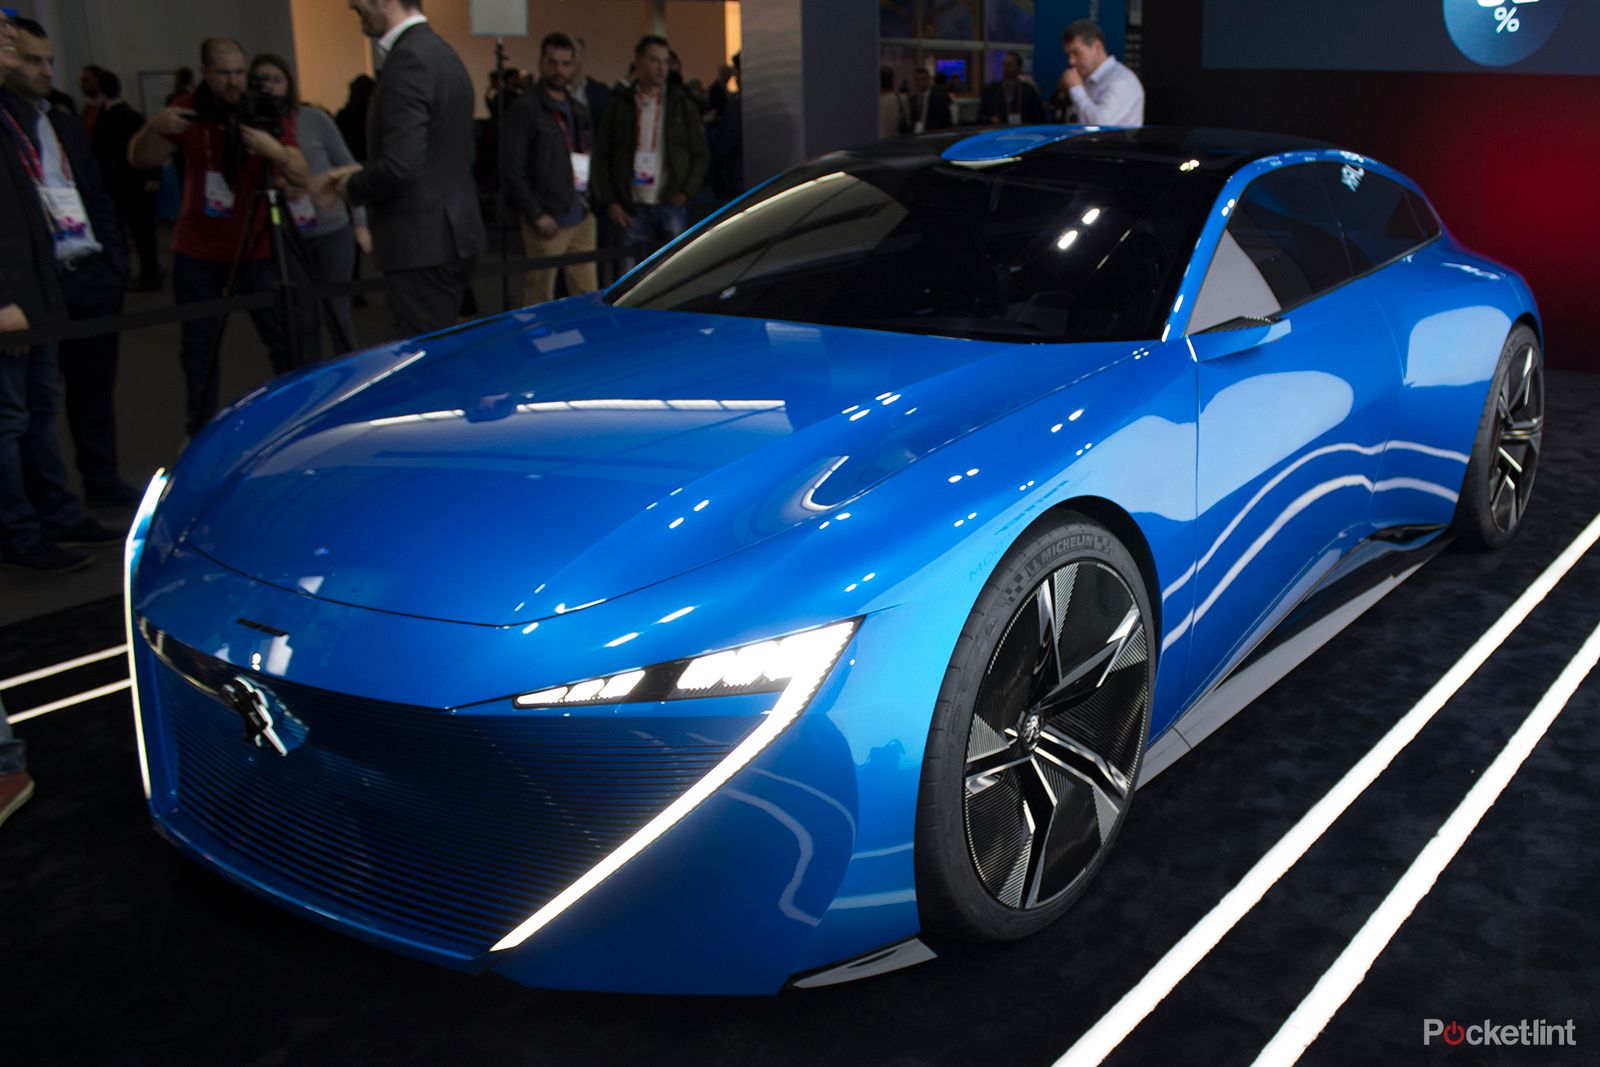 stunning instinct concept car shows peugeot s vision of an autonomous driving future image 1